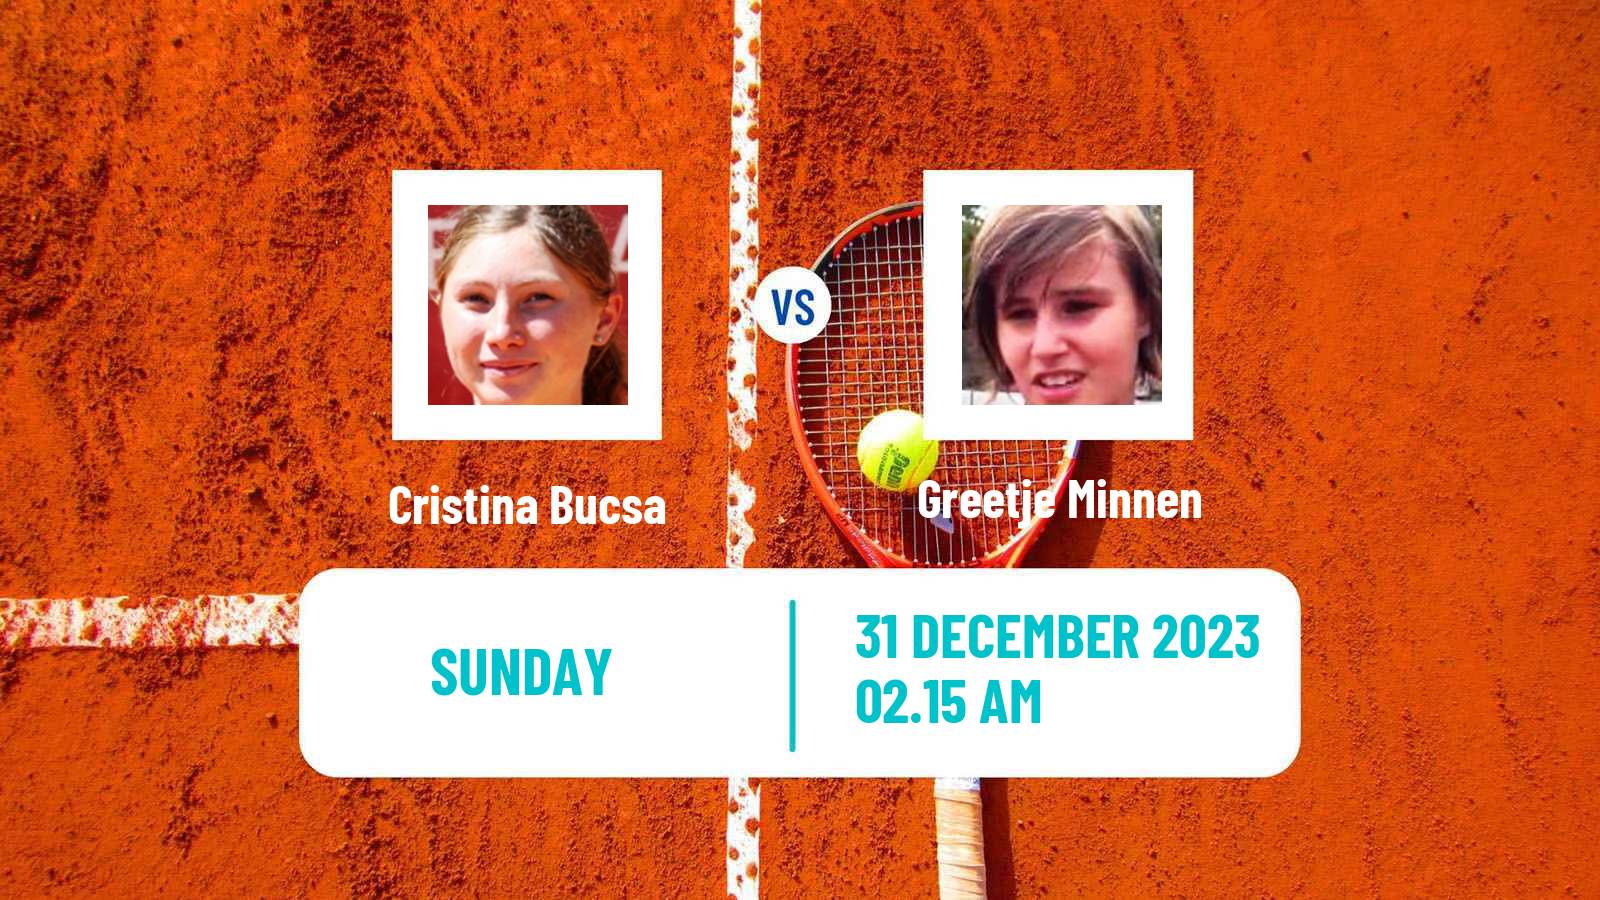 Tennis WTA Brisbane Cristina Bucsa - Greetje Minnen